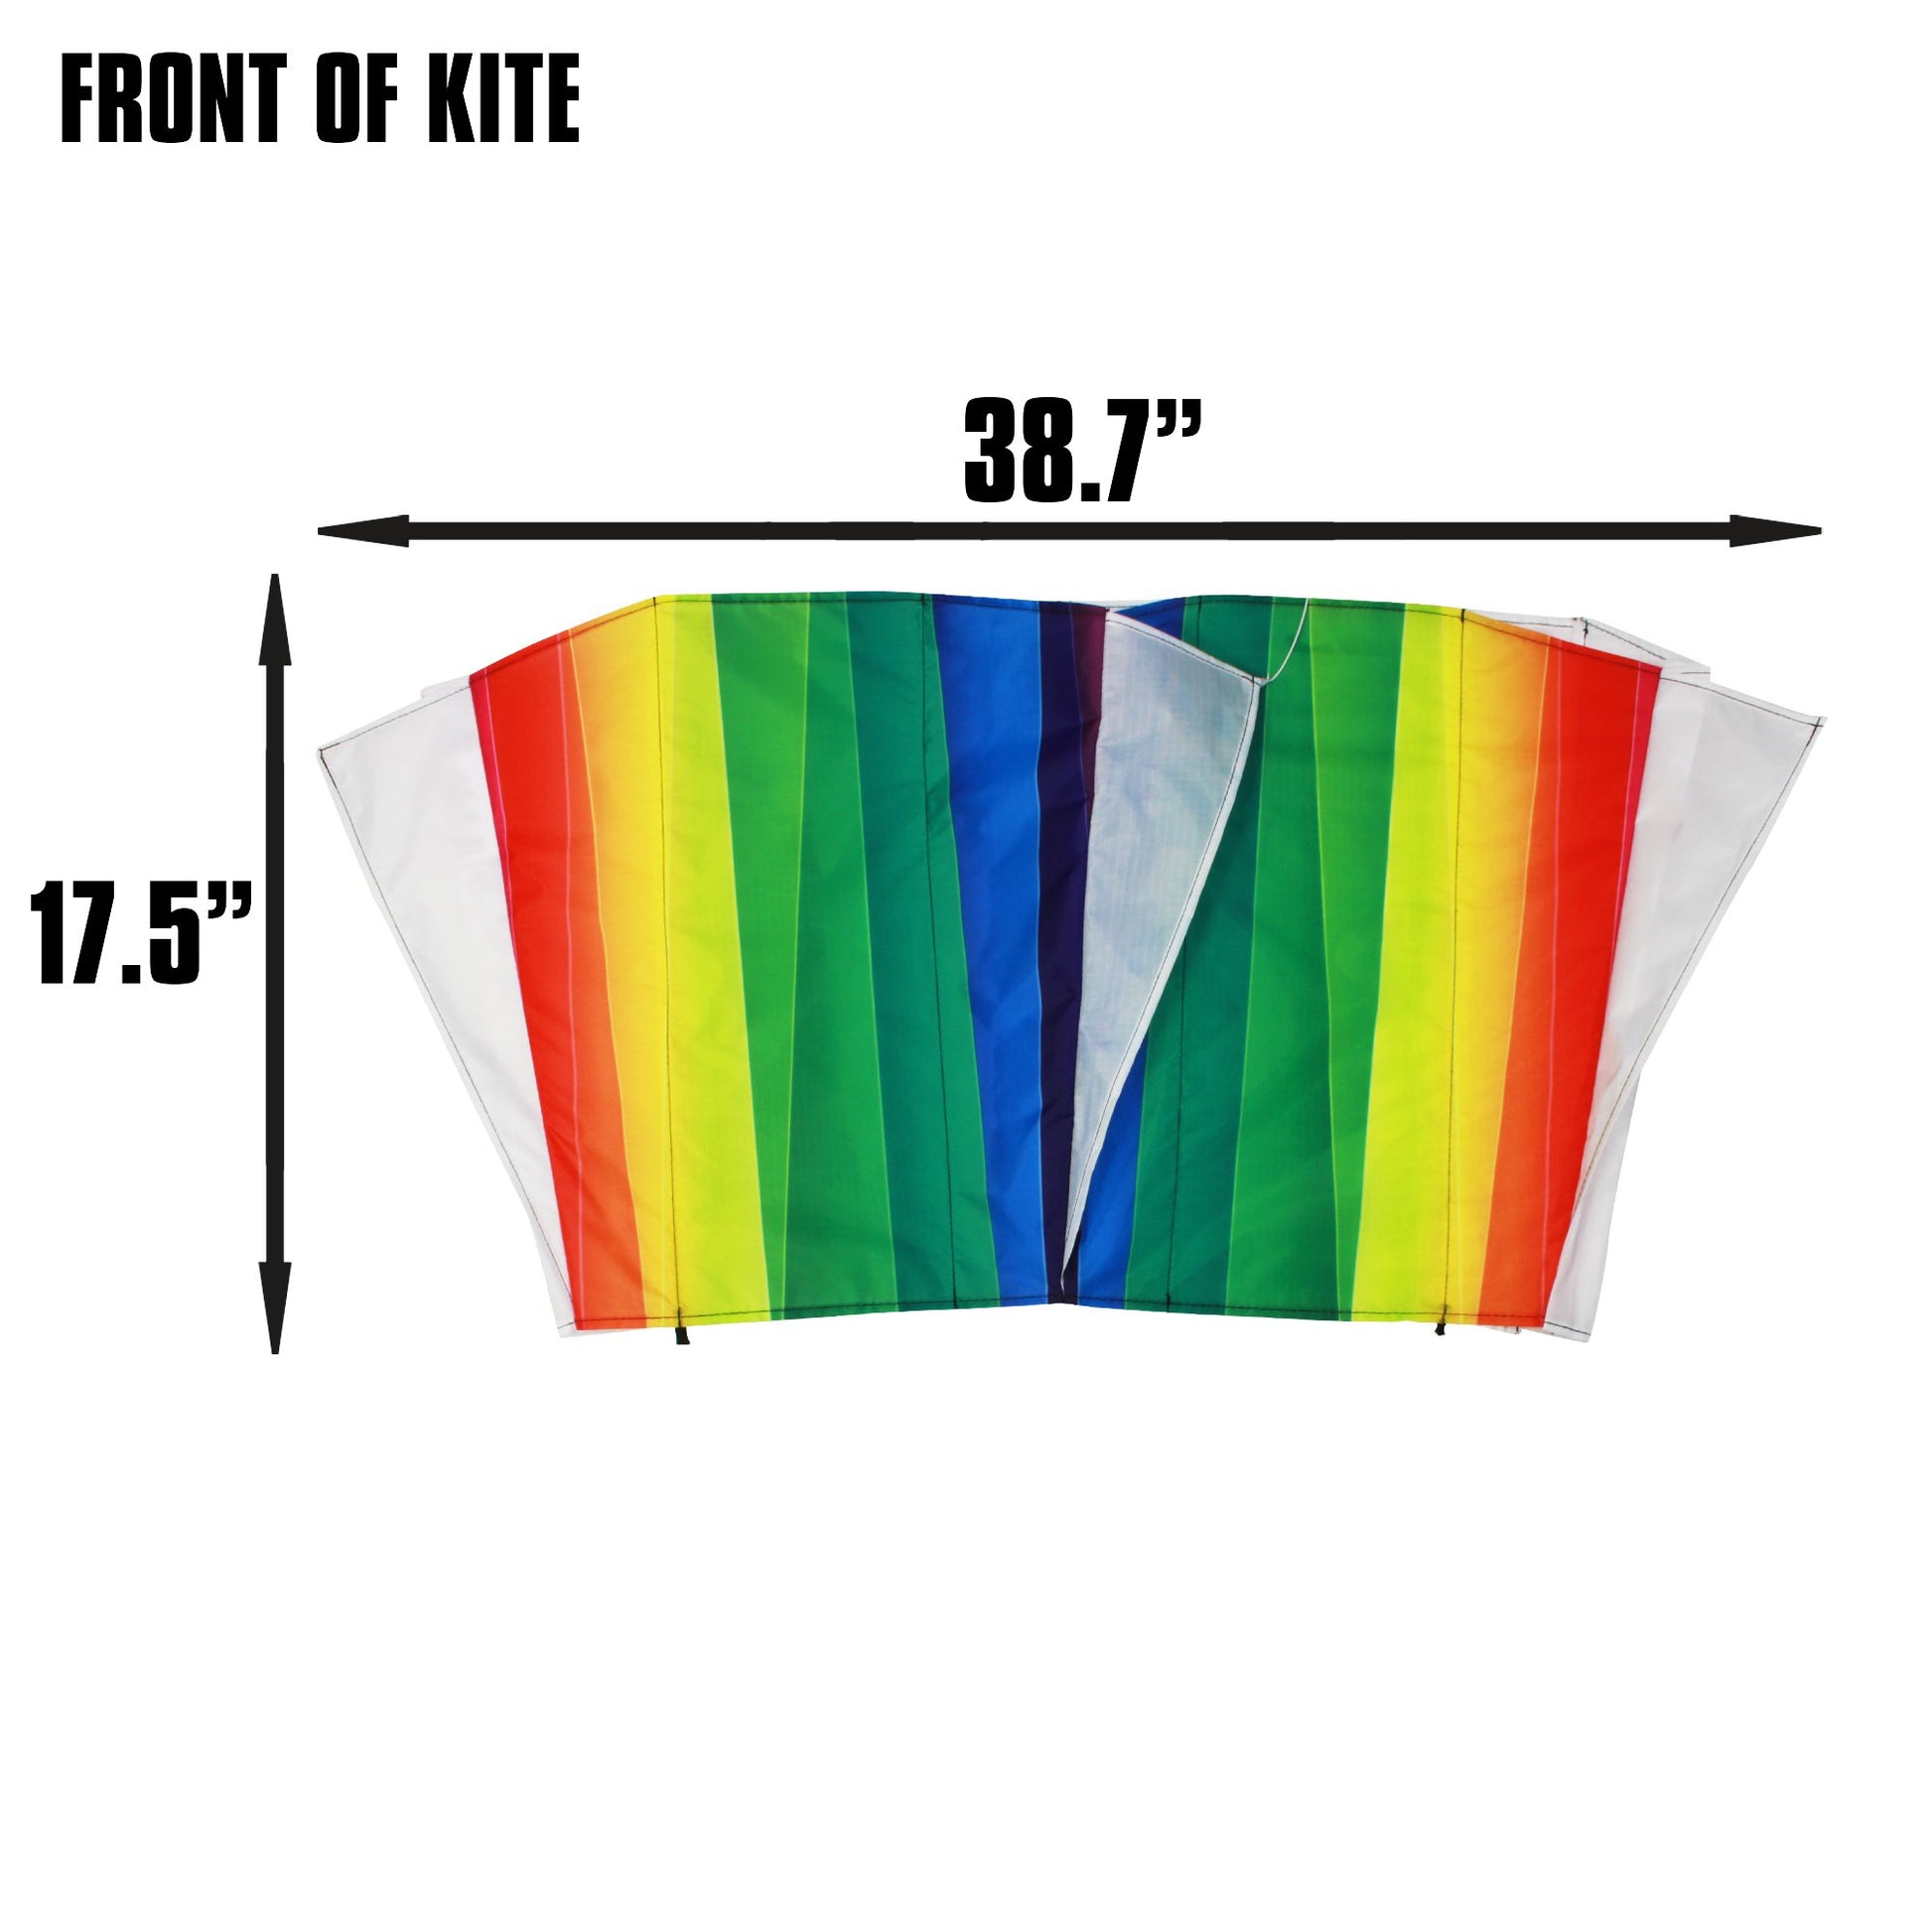 X Kites SkyFoil Rainbow Nylon Kite dimensions